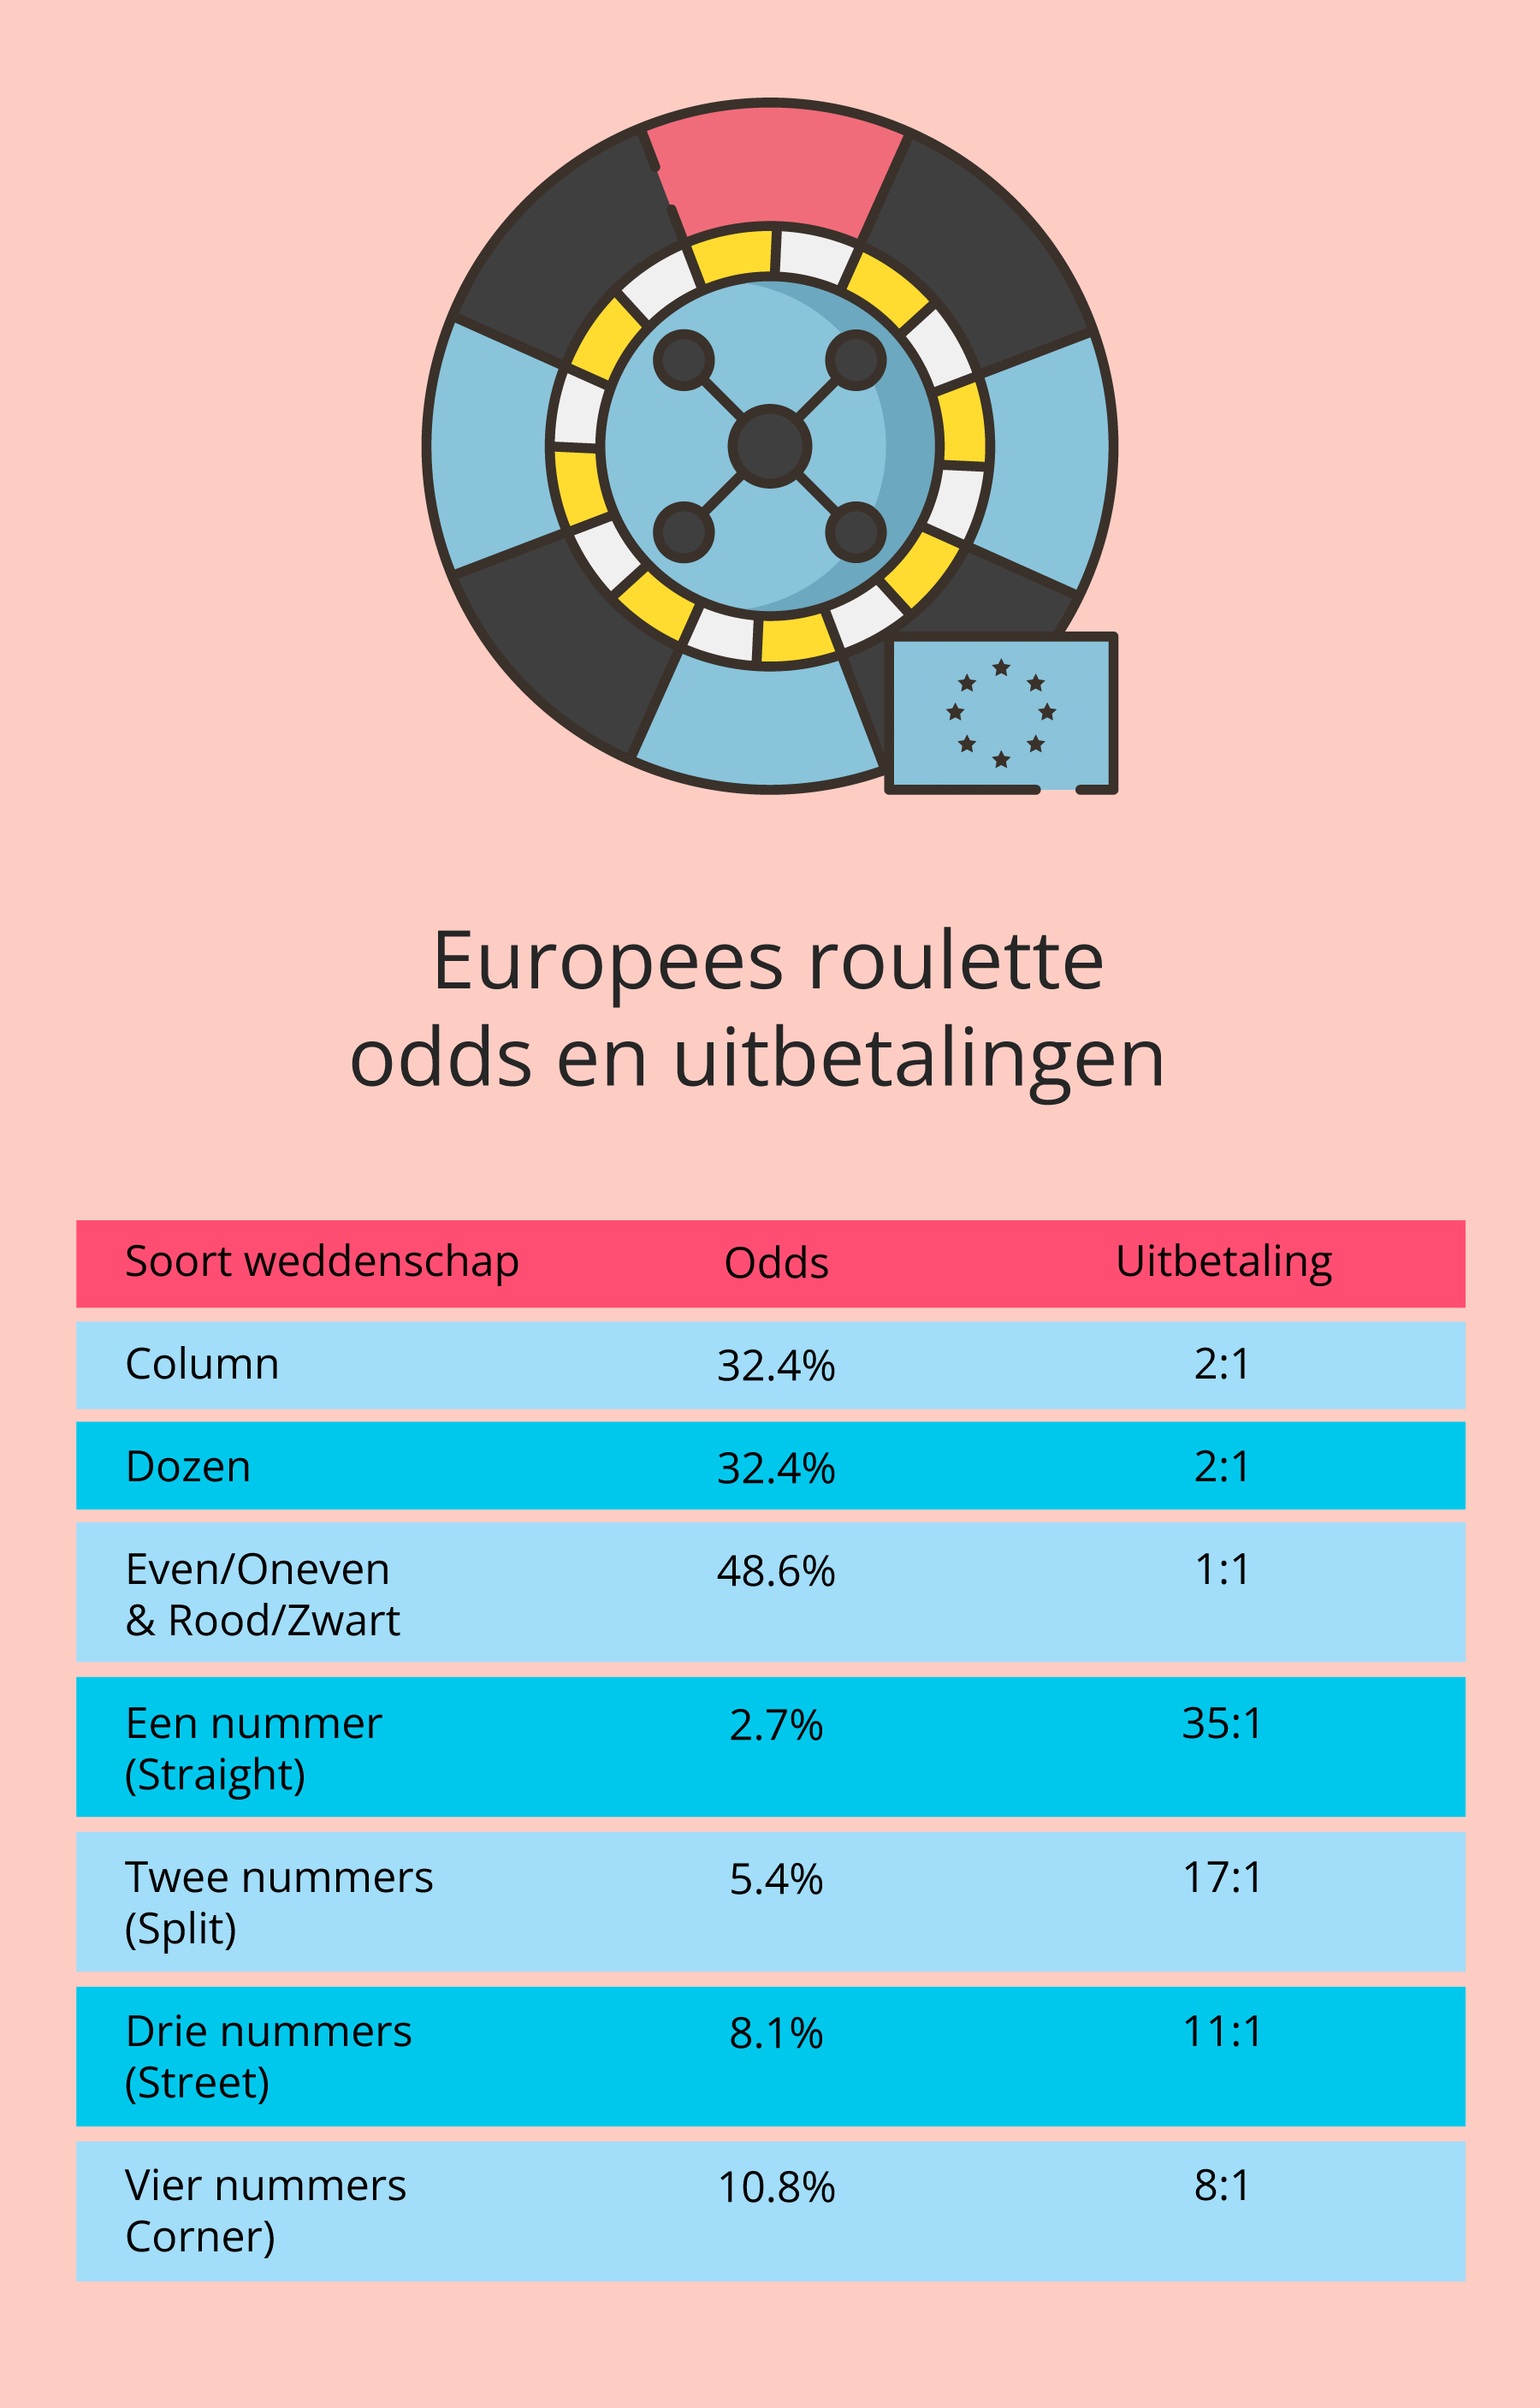 Odds en uitbetalingen van Europees roulette